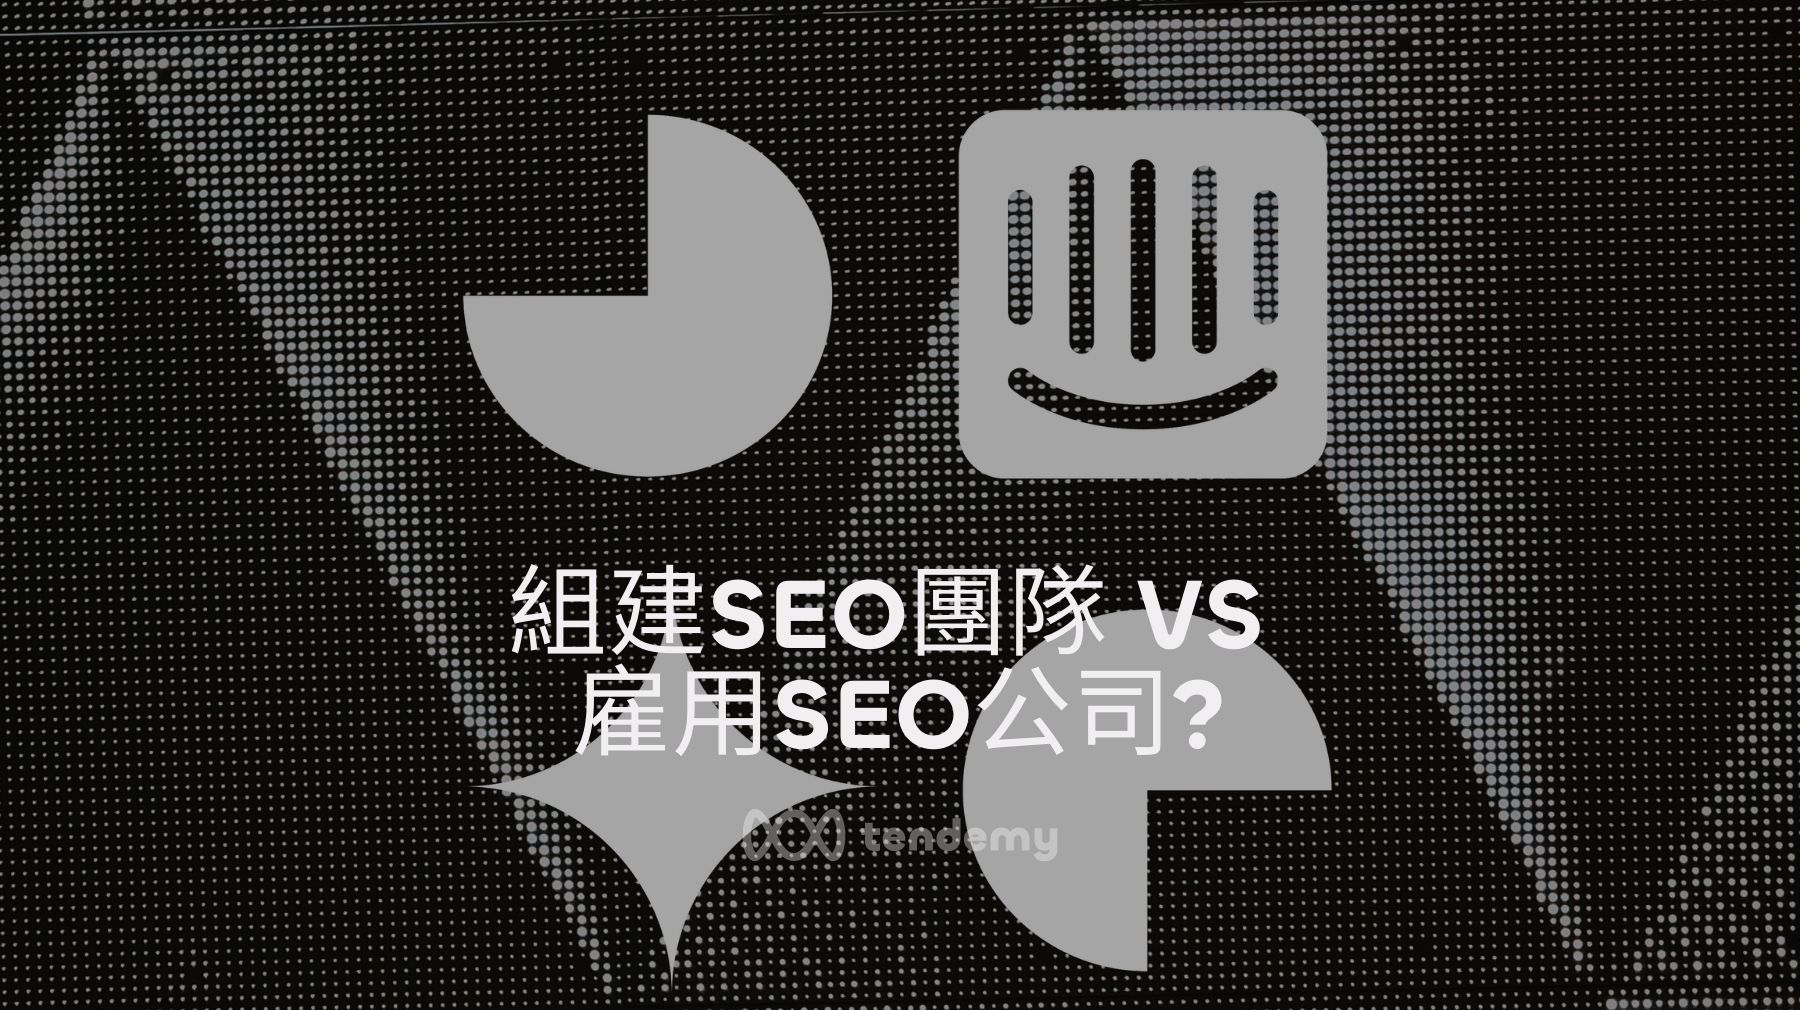 組建SEO團隊 VS 雇用SEO公司：您該考慮的利與弊